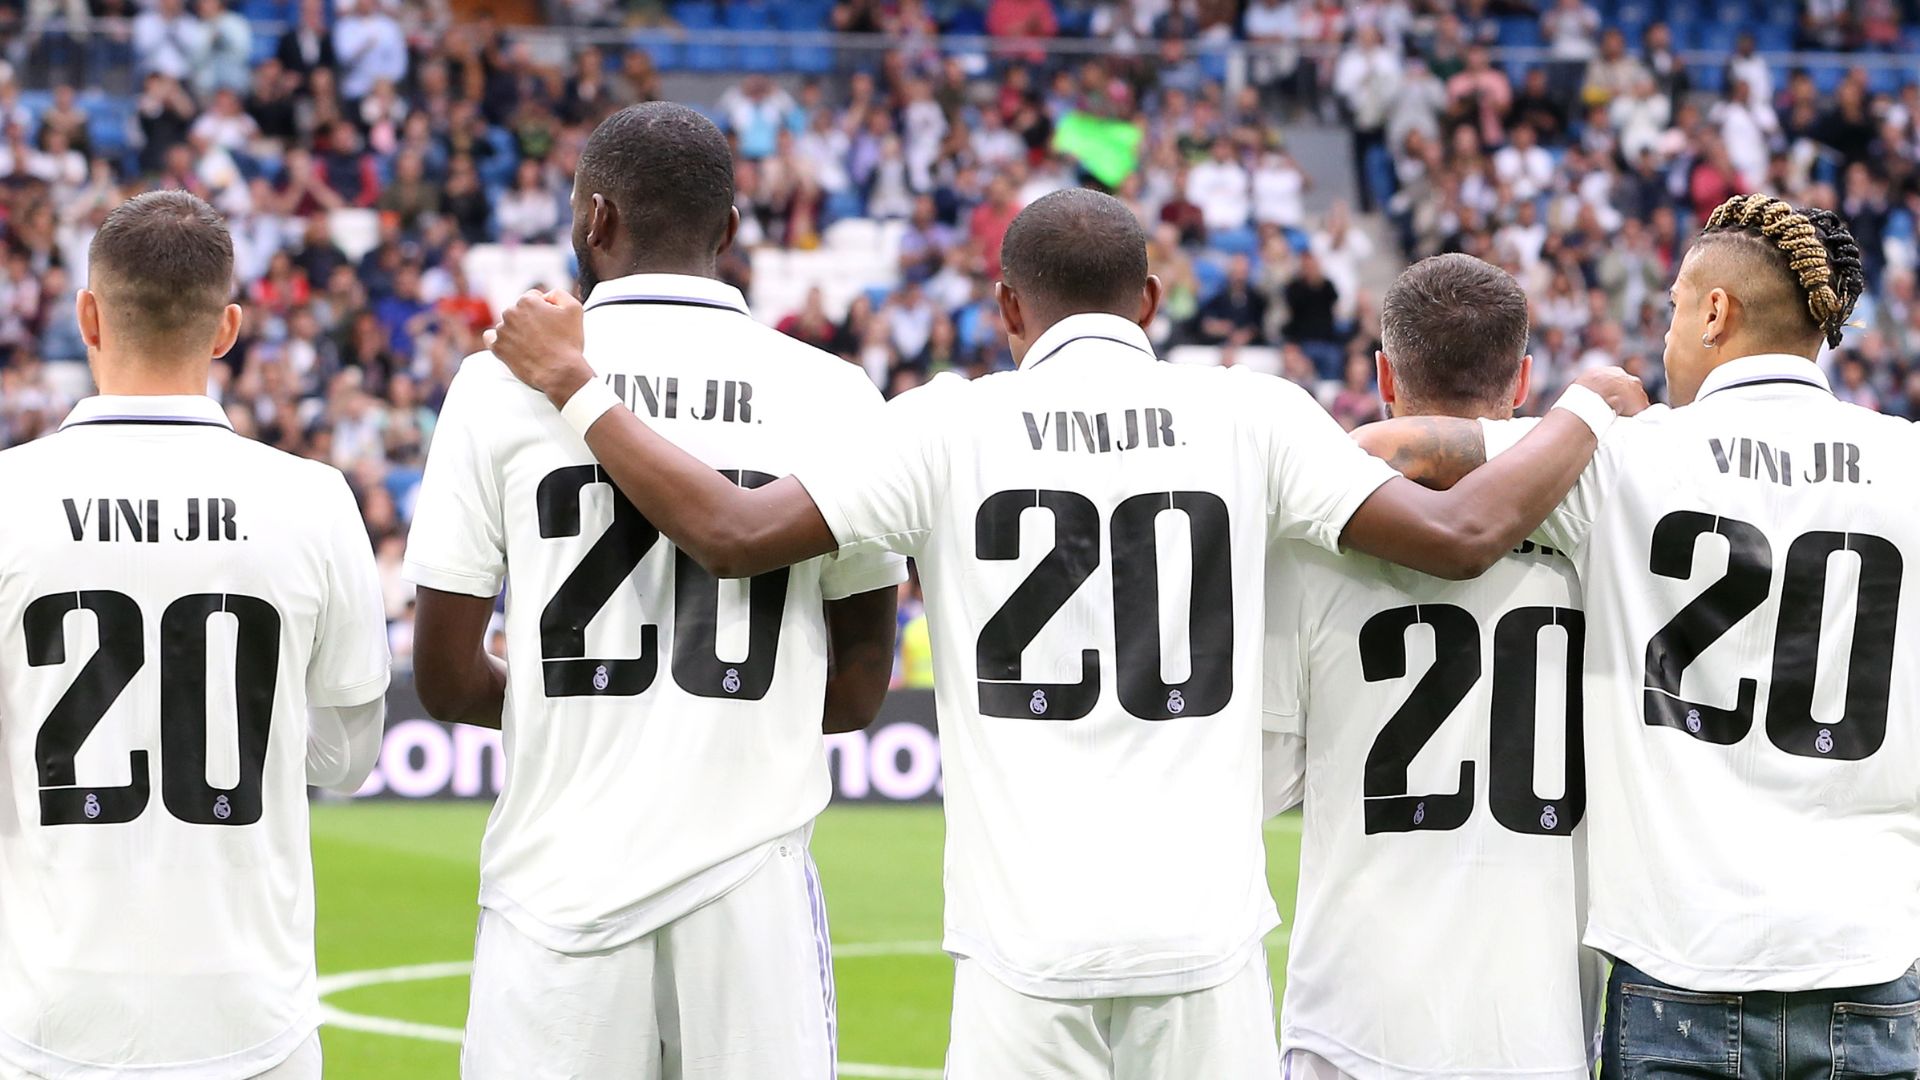 Os jogadores do Real Madrid entraram vestindo camisas de Vini Jr, em apoio ao companheiro (Crédito: Getty Images)